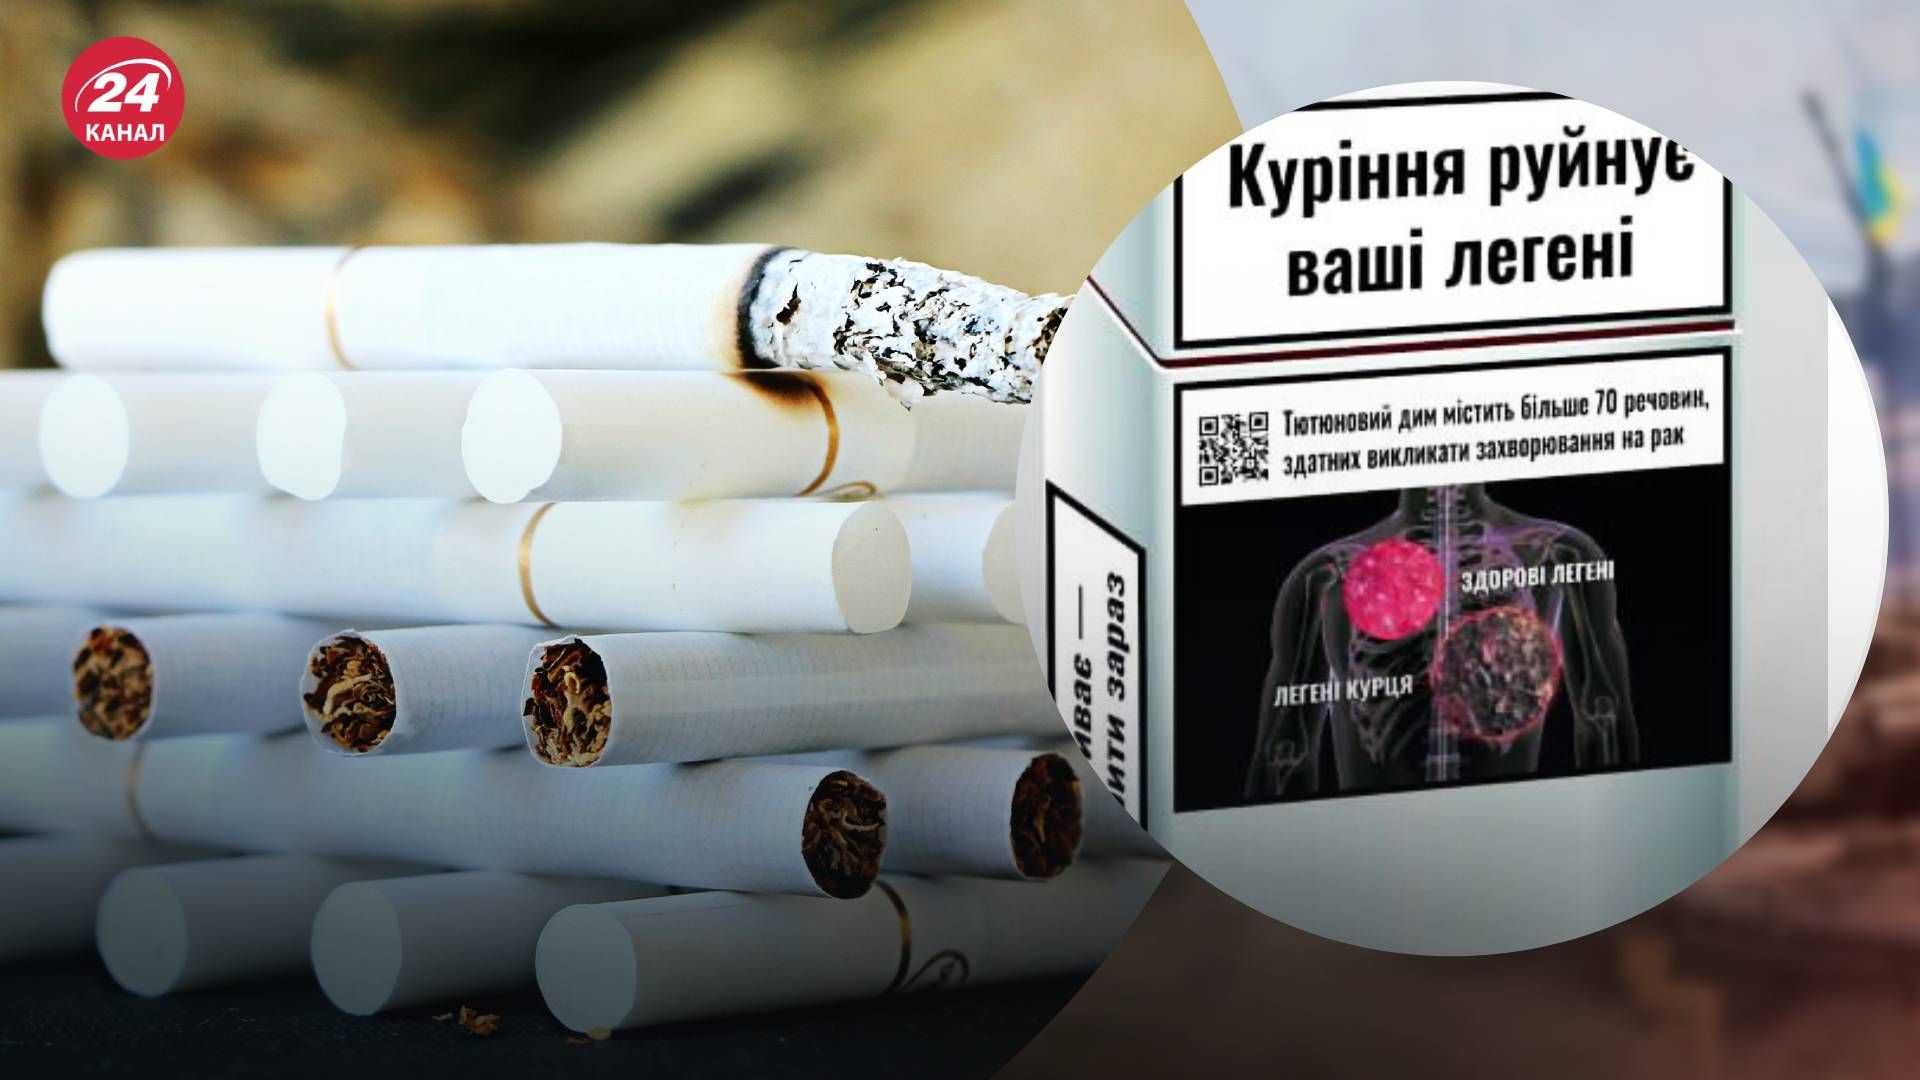 Предупреждение о риске курения будет занимать 65% площадь пачки